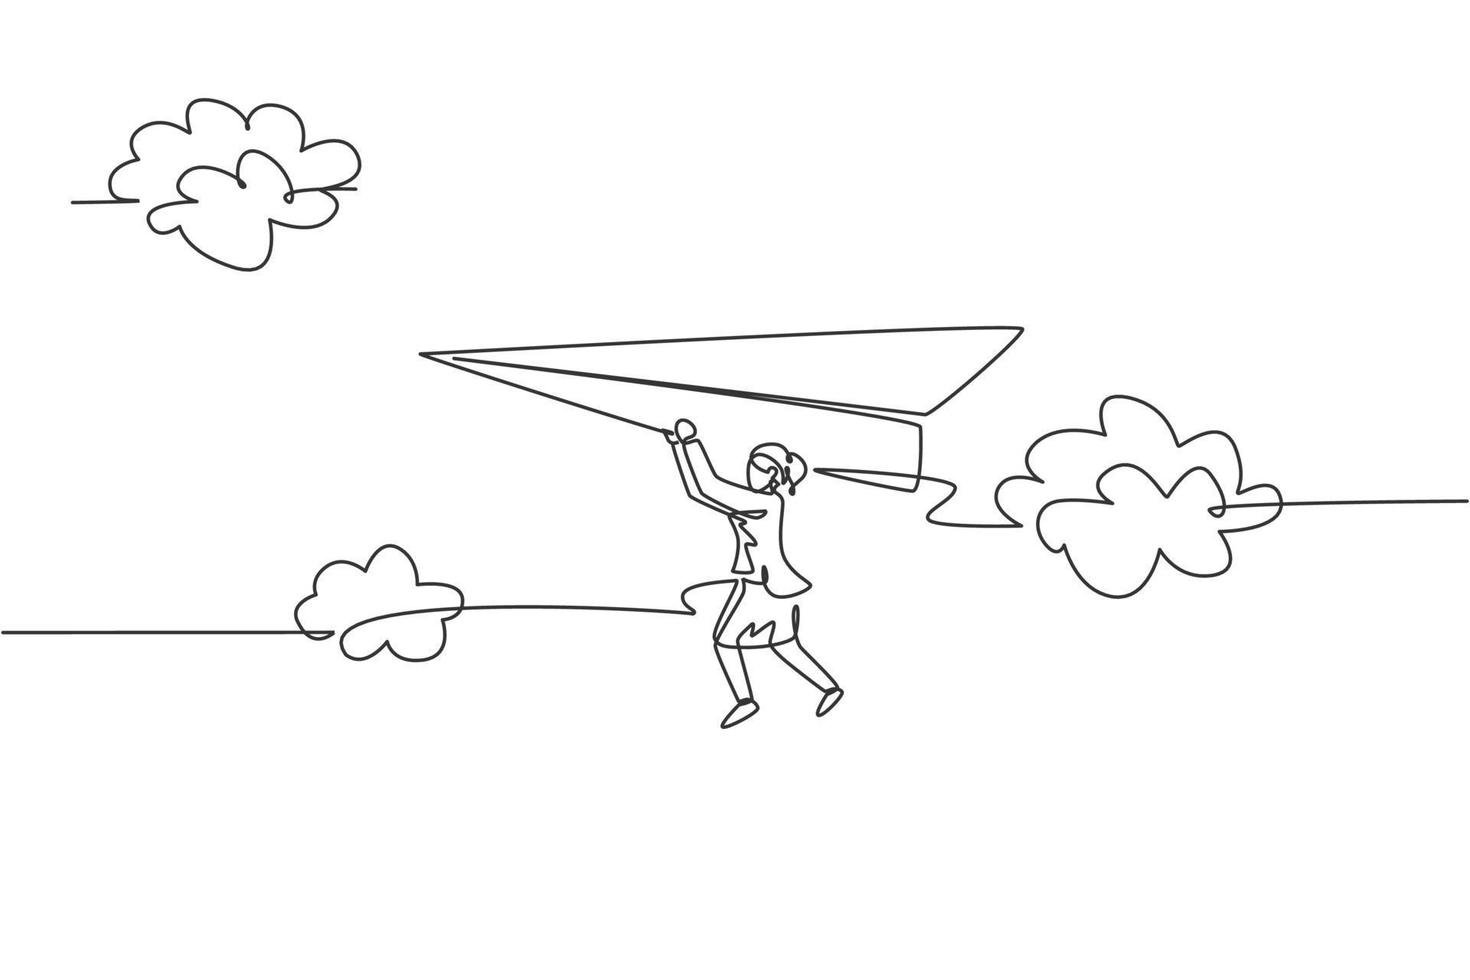 Single One-Line-Zeichnung junge Geschäftsfrau, die am fliegenden Papierflugzeug am Himmel hängt. Herausforderung für das Geschäftsziel. Metapher minimales Konzept. moderne durchgehende Linie zeichnen Design-Grafik-Vektor-Illustration vektor